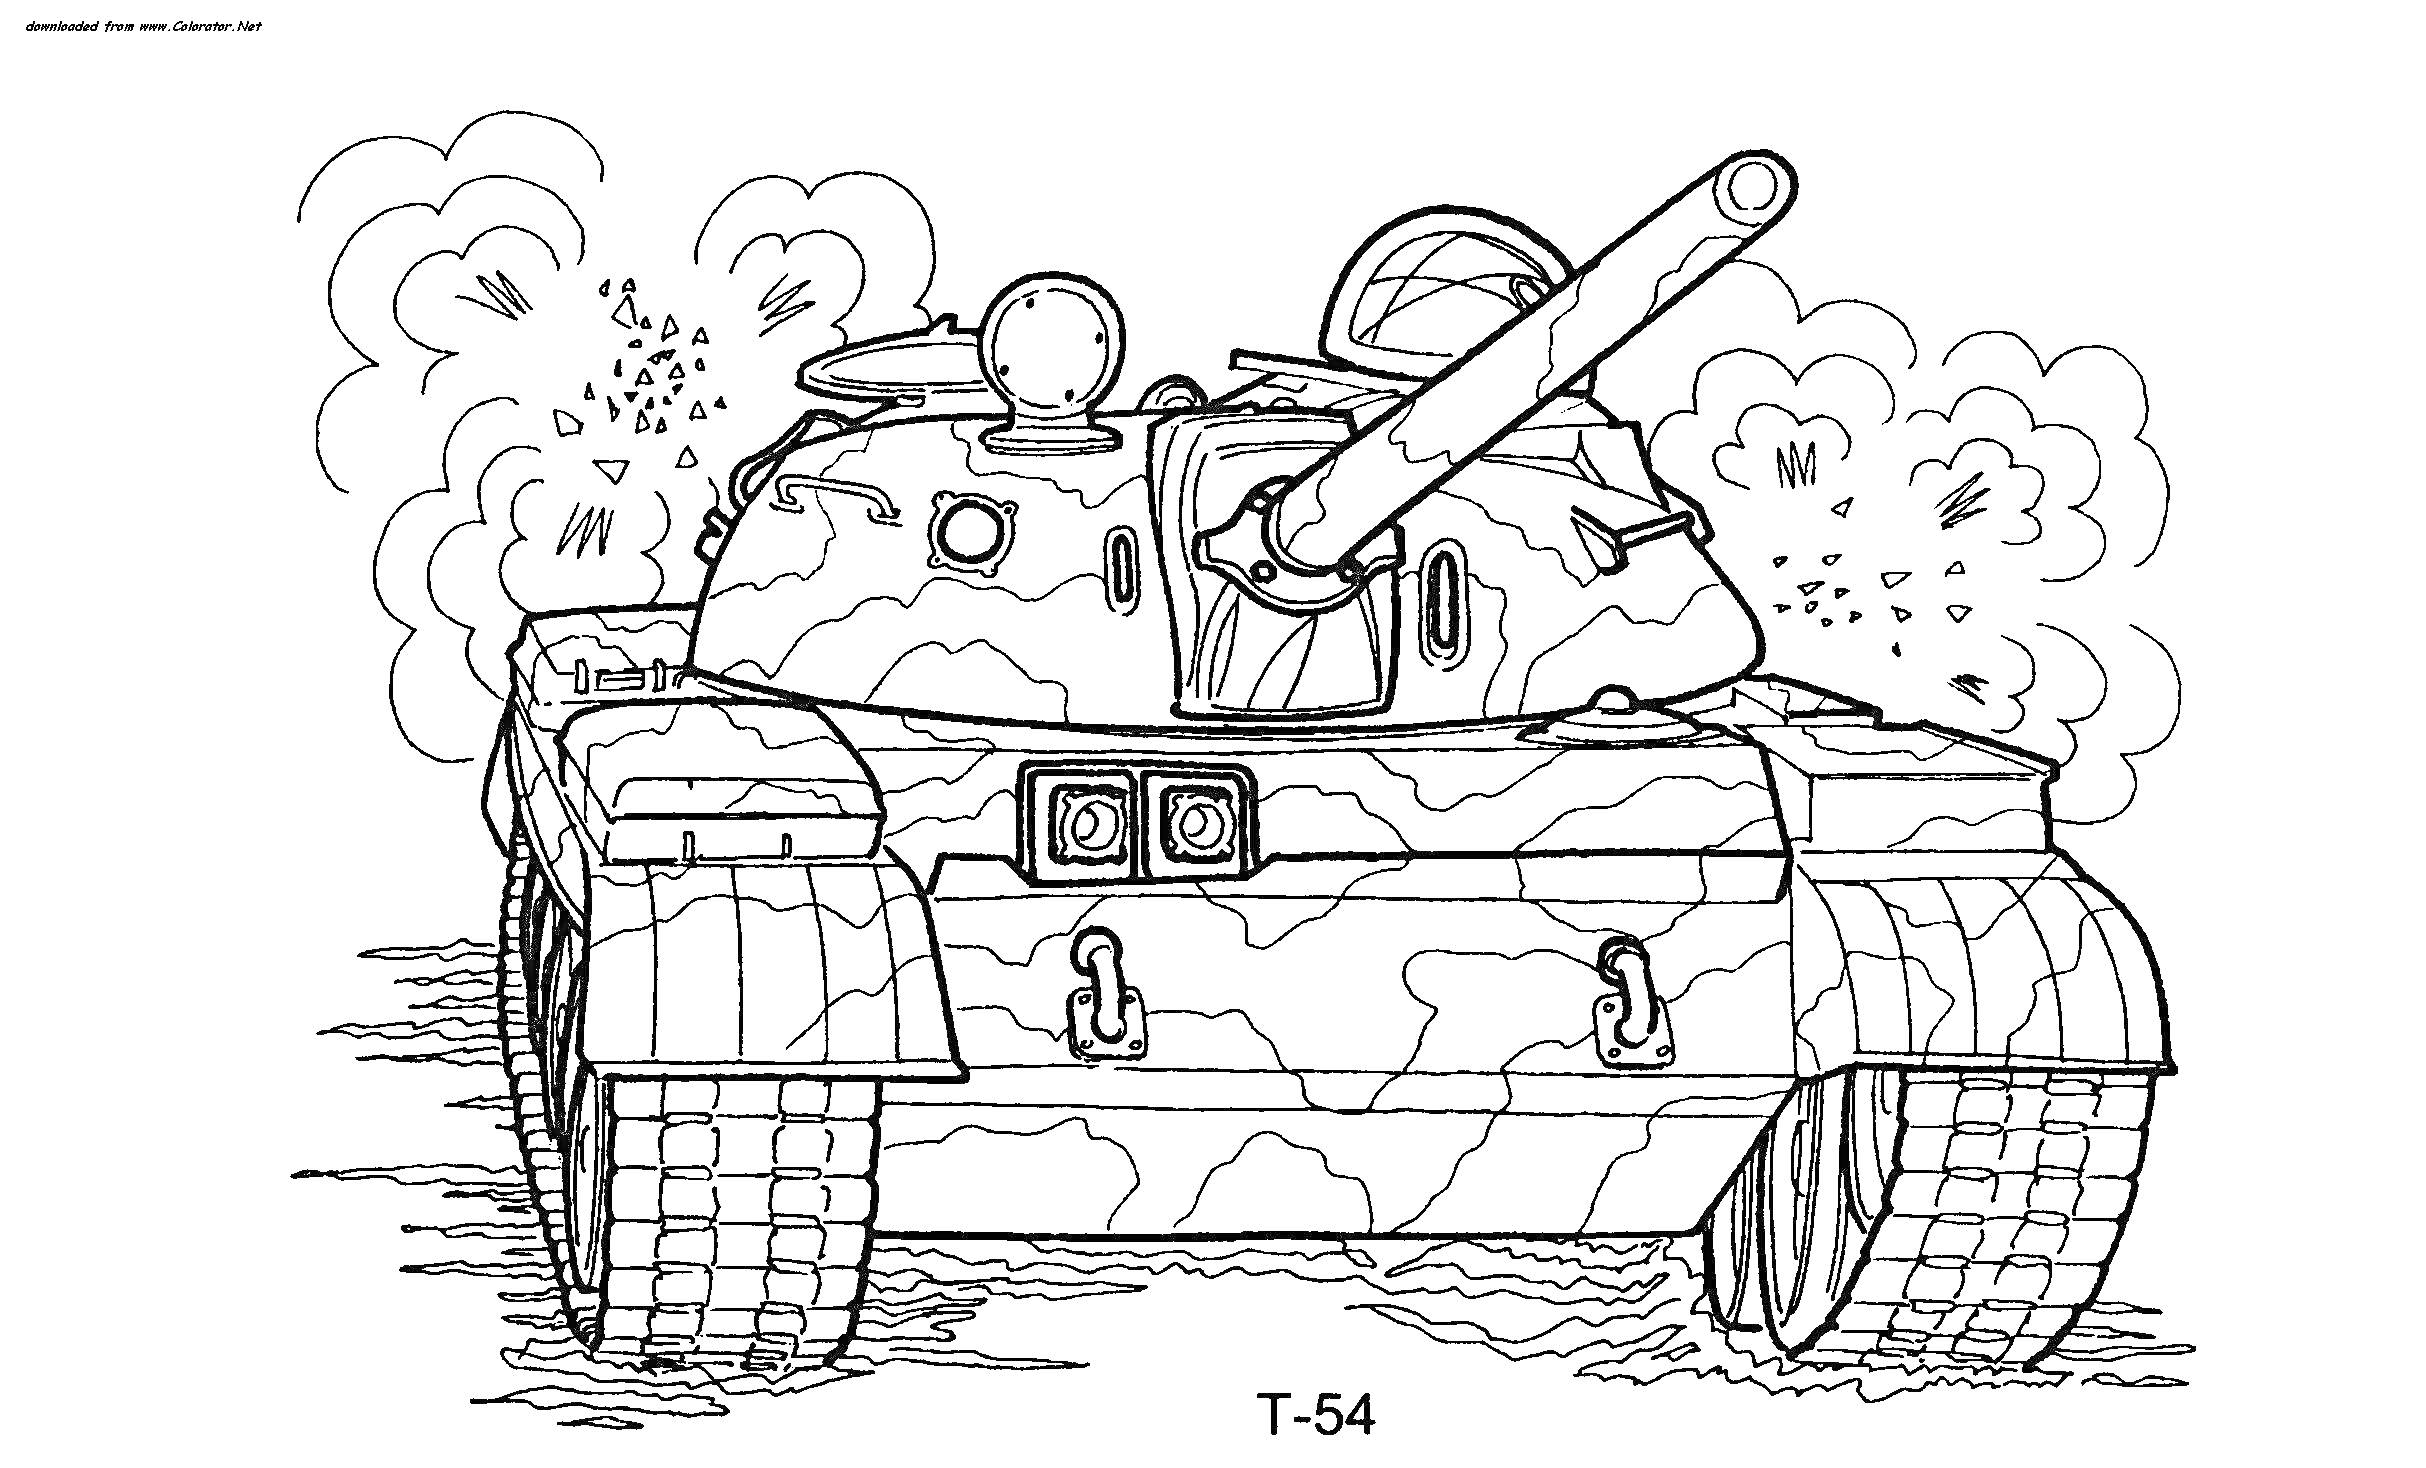 Танк T-54 на фоне дыма